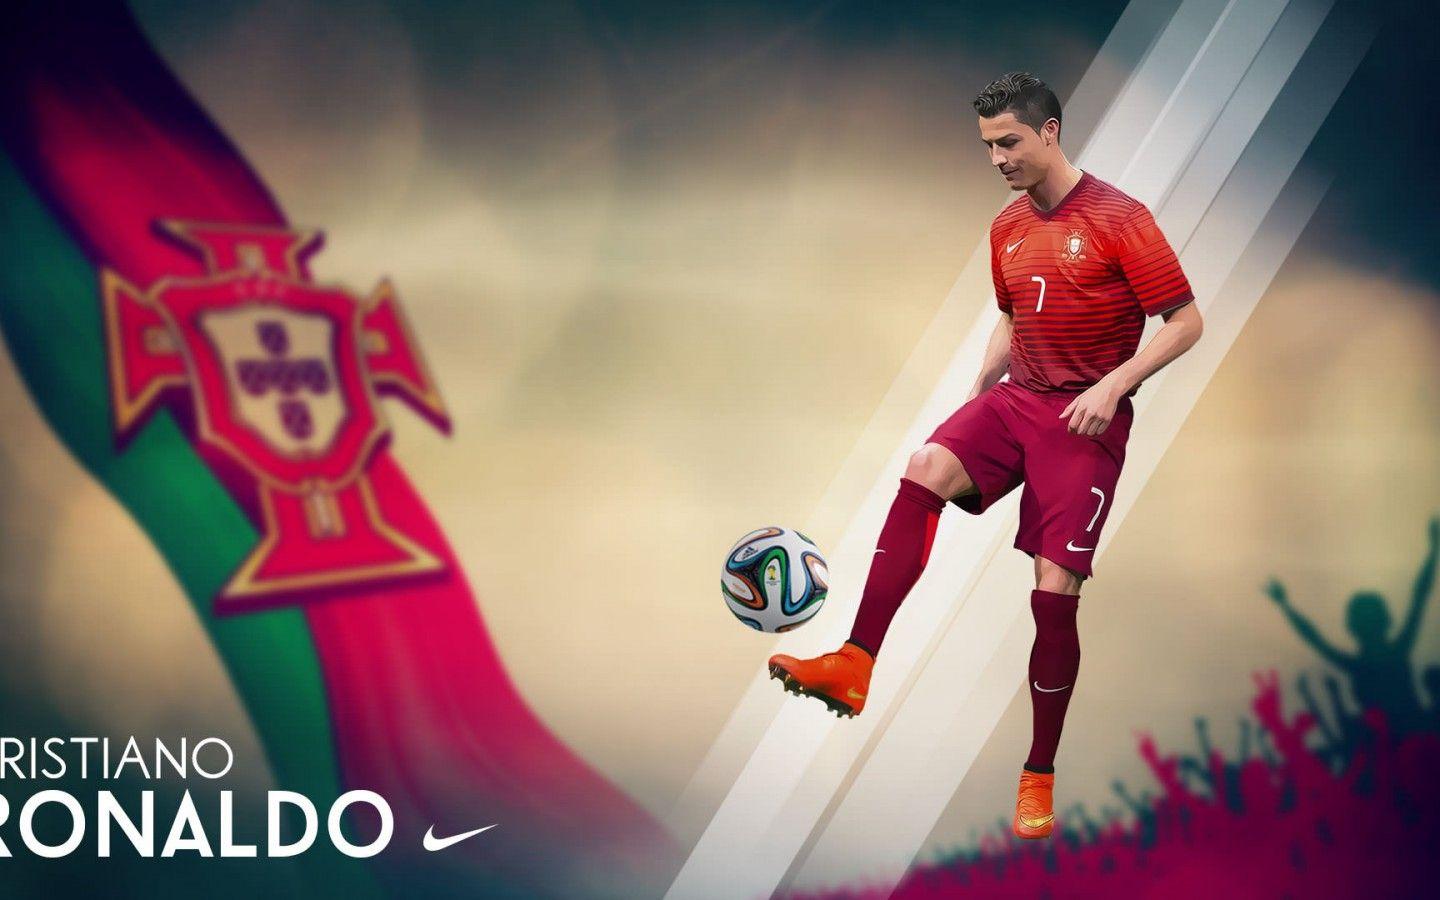 Cristiano Ronaldo Portugal FIFA World Cup 2014 Wallpaper